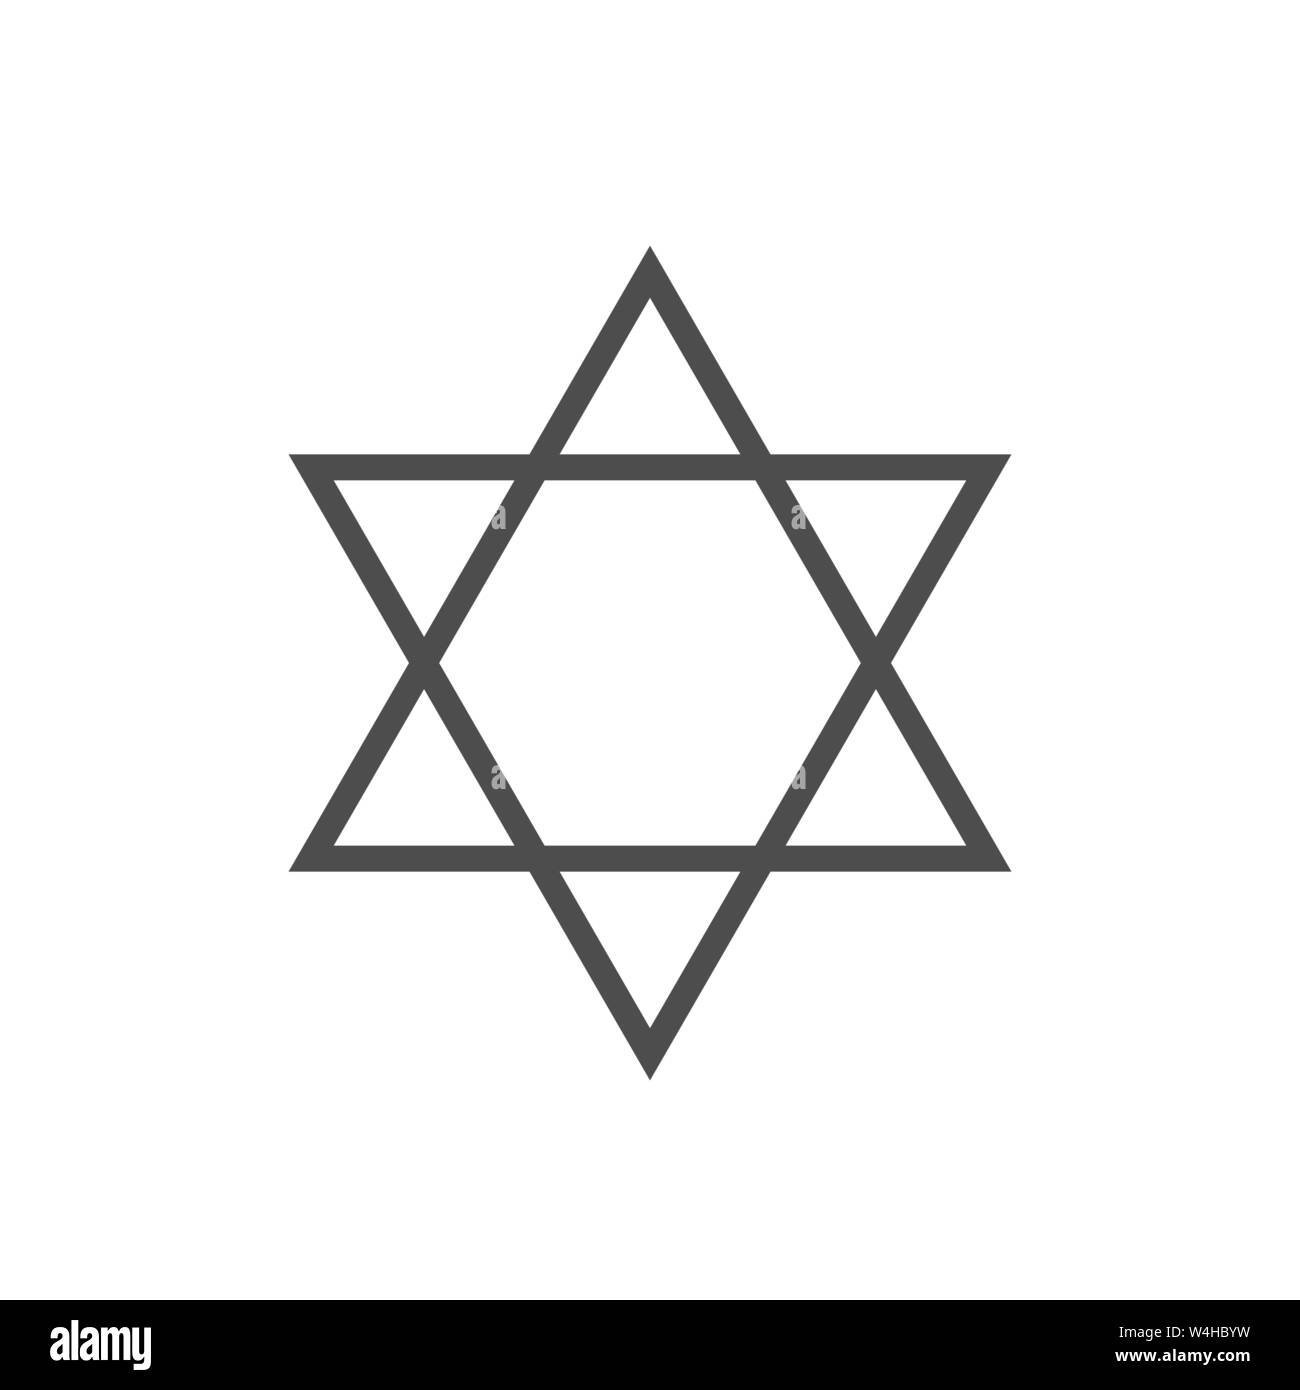 David stern Symbol. Sechs wies Geometrische star Abbildung, allgemein anerkannten Symbol des modernen jüdischen Identität und Judentum Israel Symbol Stock Vektor